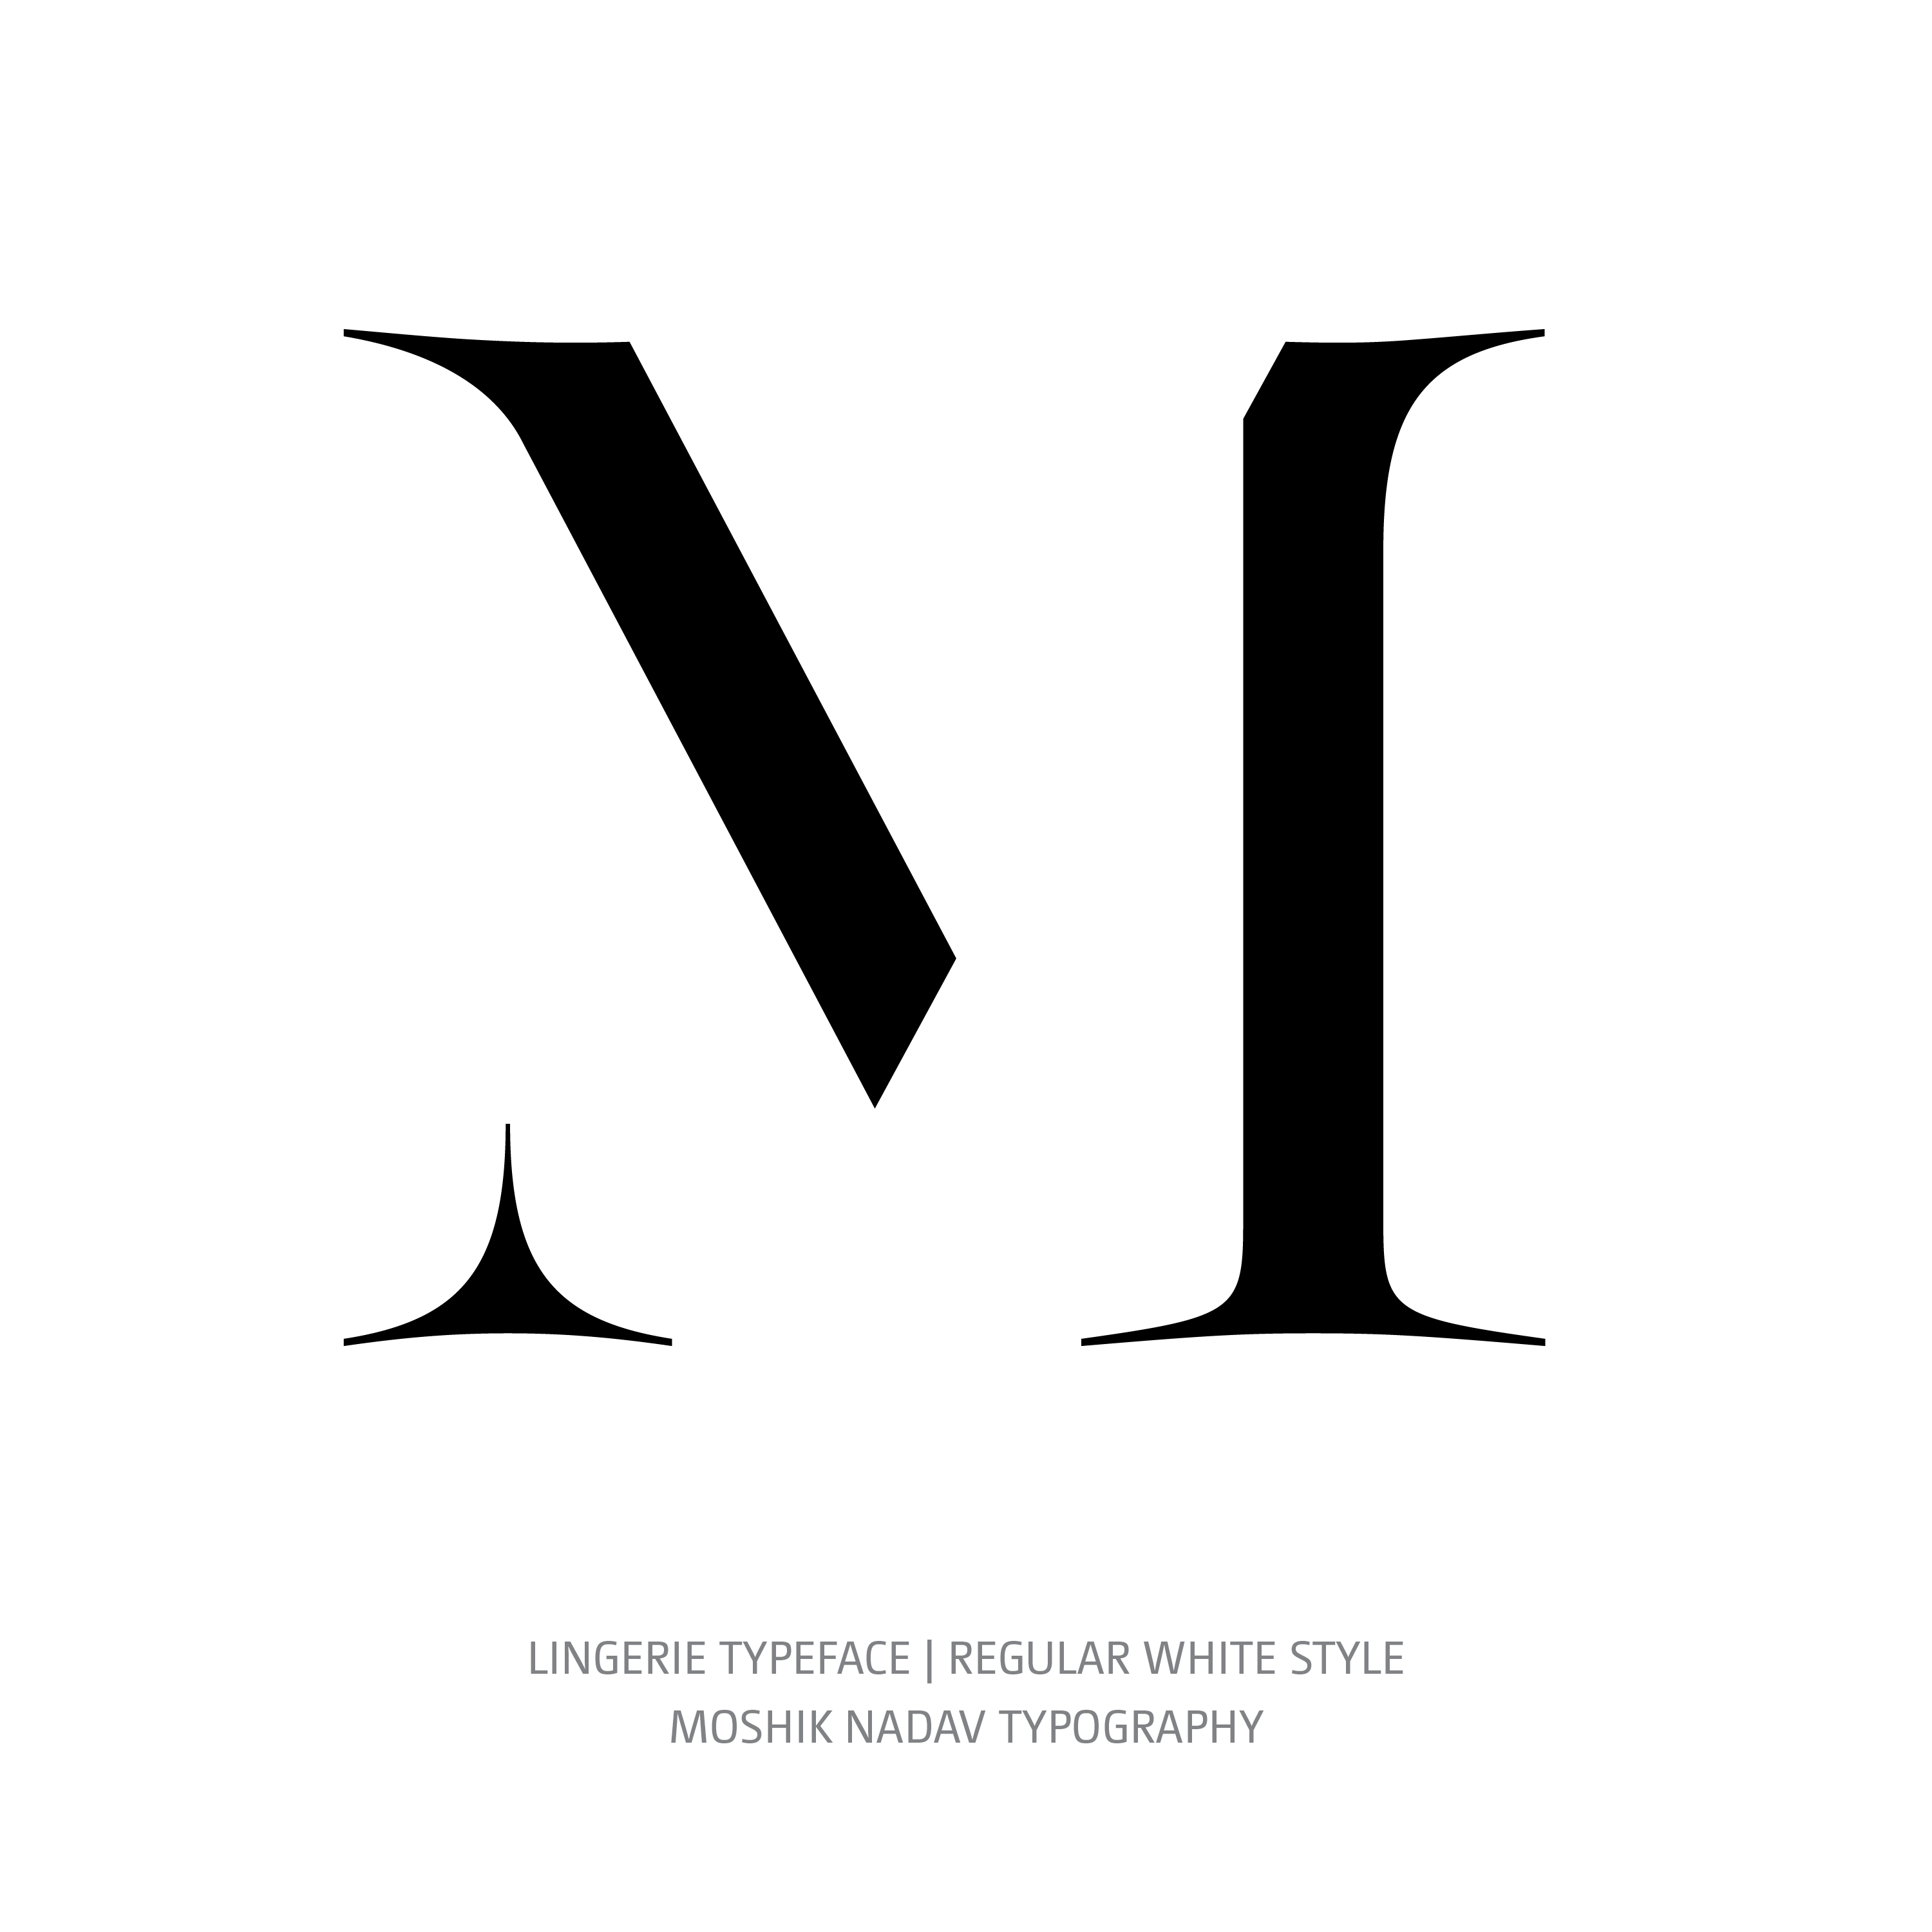 Lingerie Typeface Regular White M